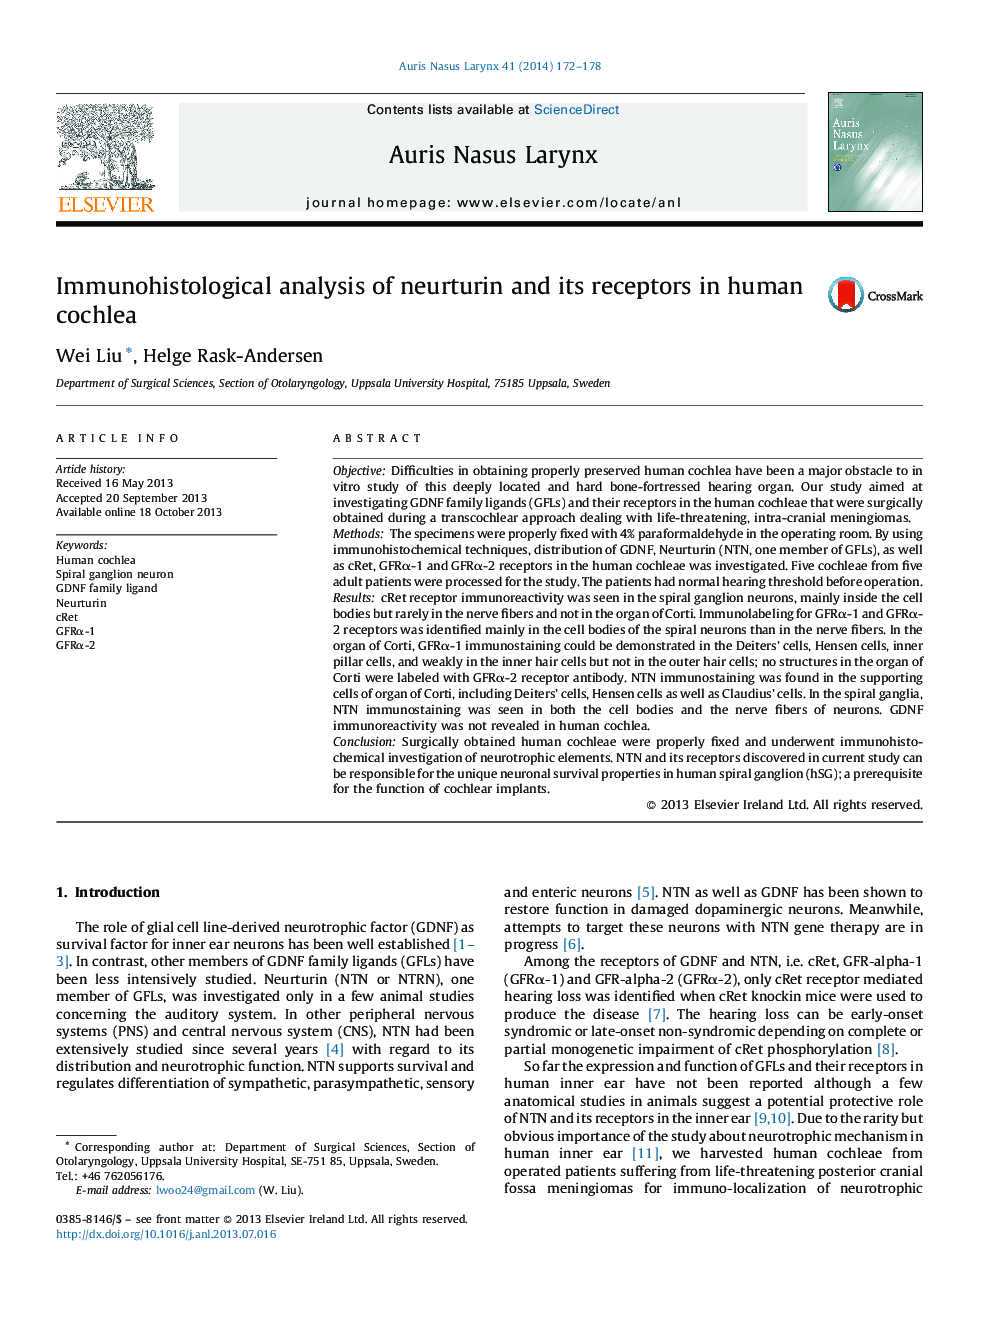 تجزیه و تحلیل ایمونوهیستولوژیک نورتورین و گیرنده های آن در حلقه انسانی 